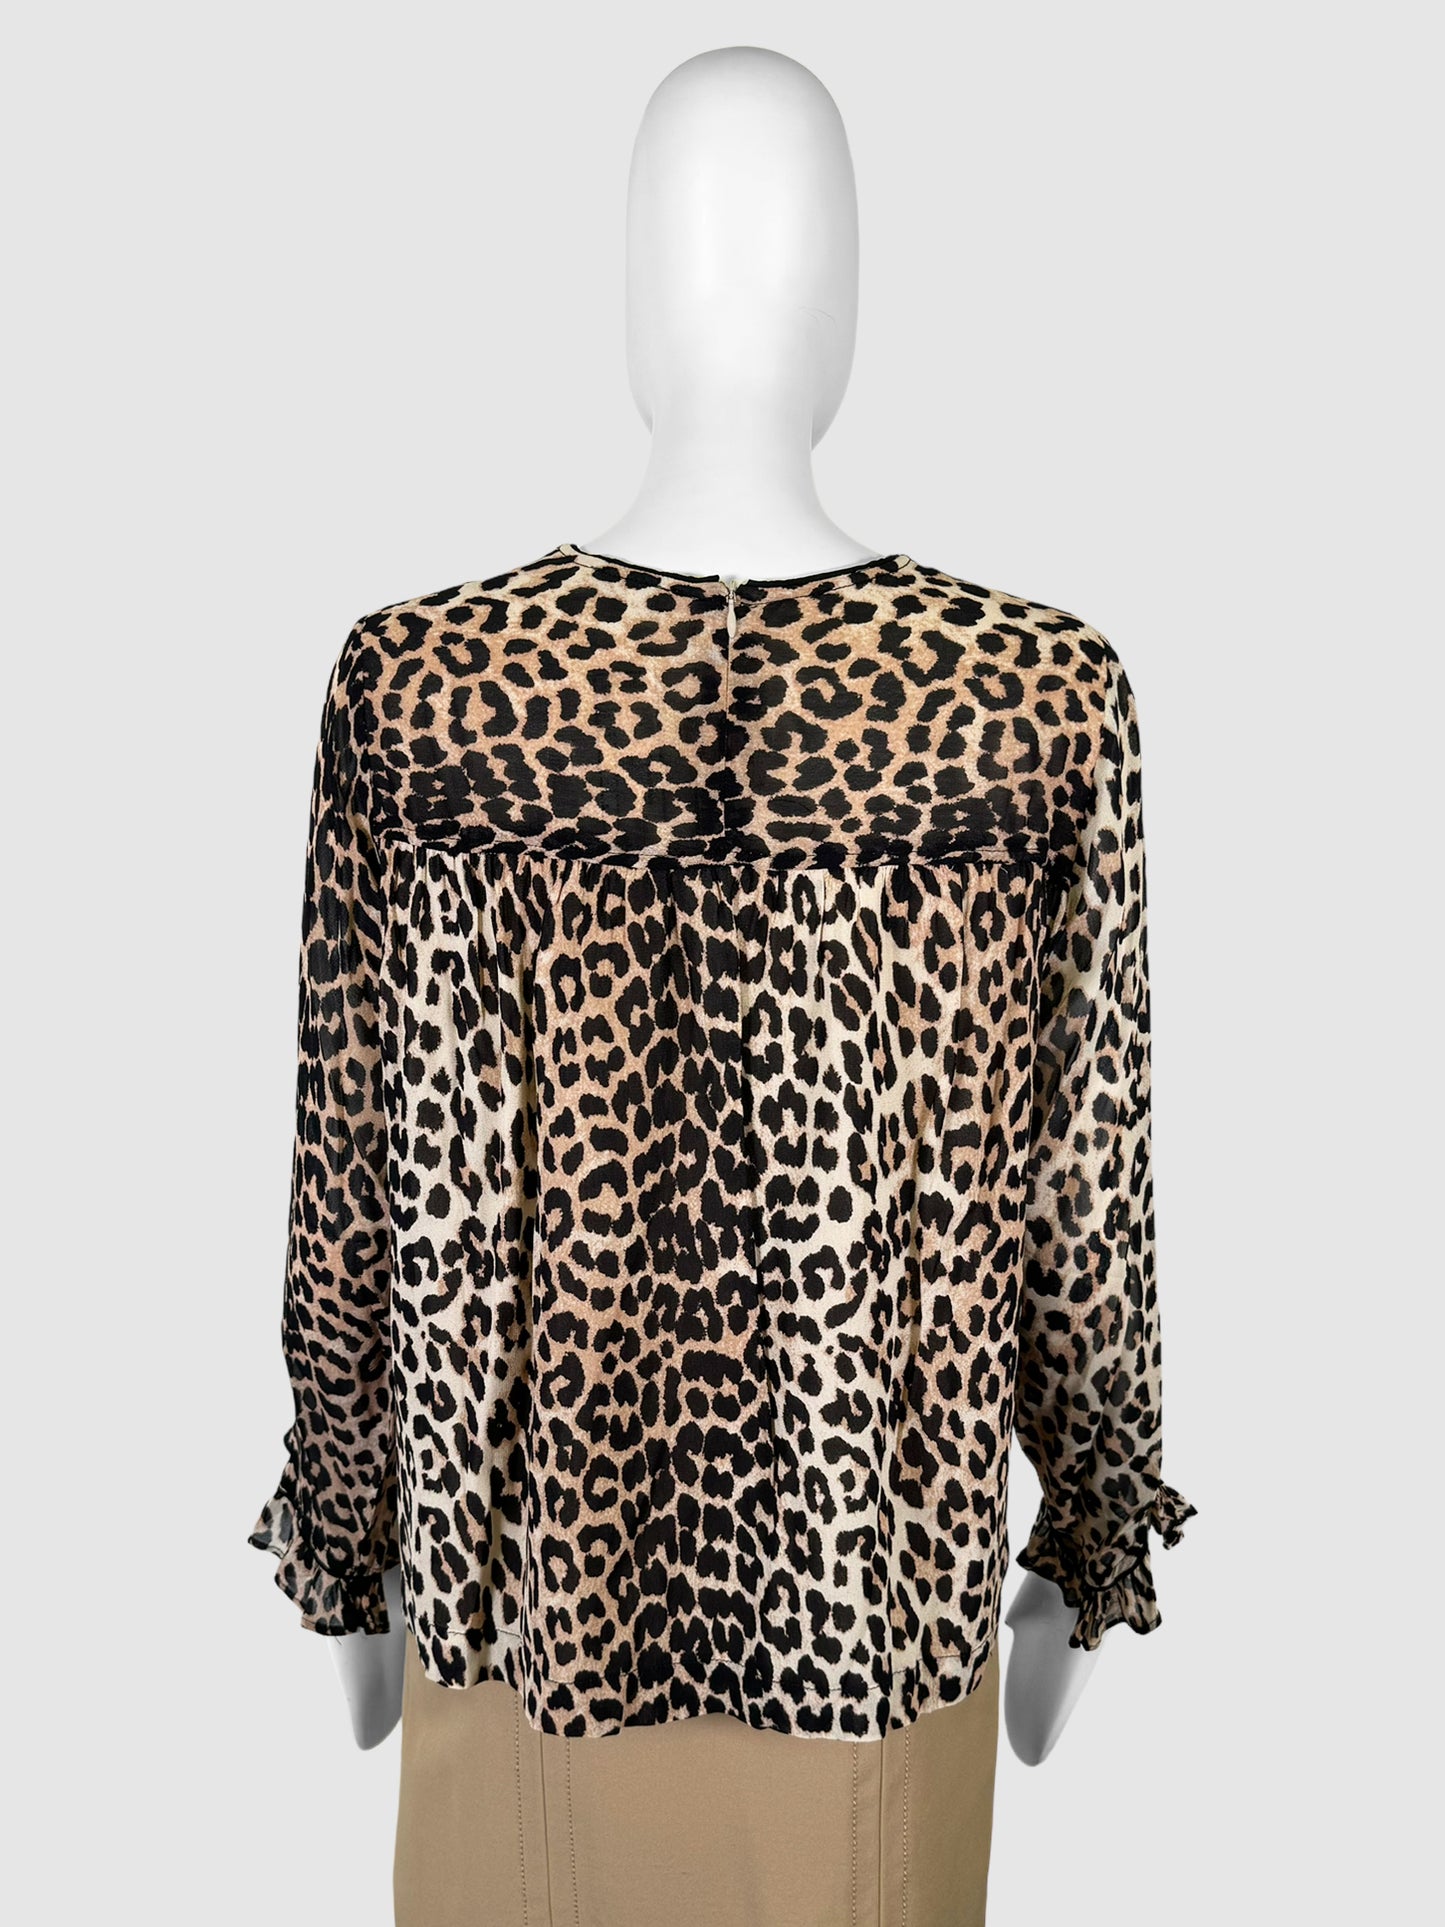 Leopard Print Top - Size 42